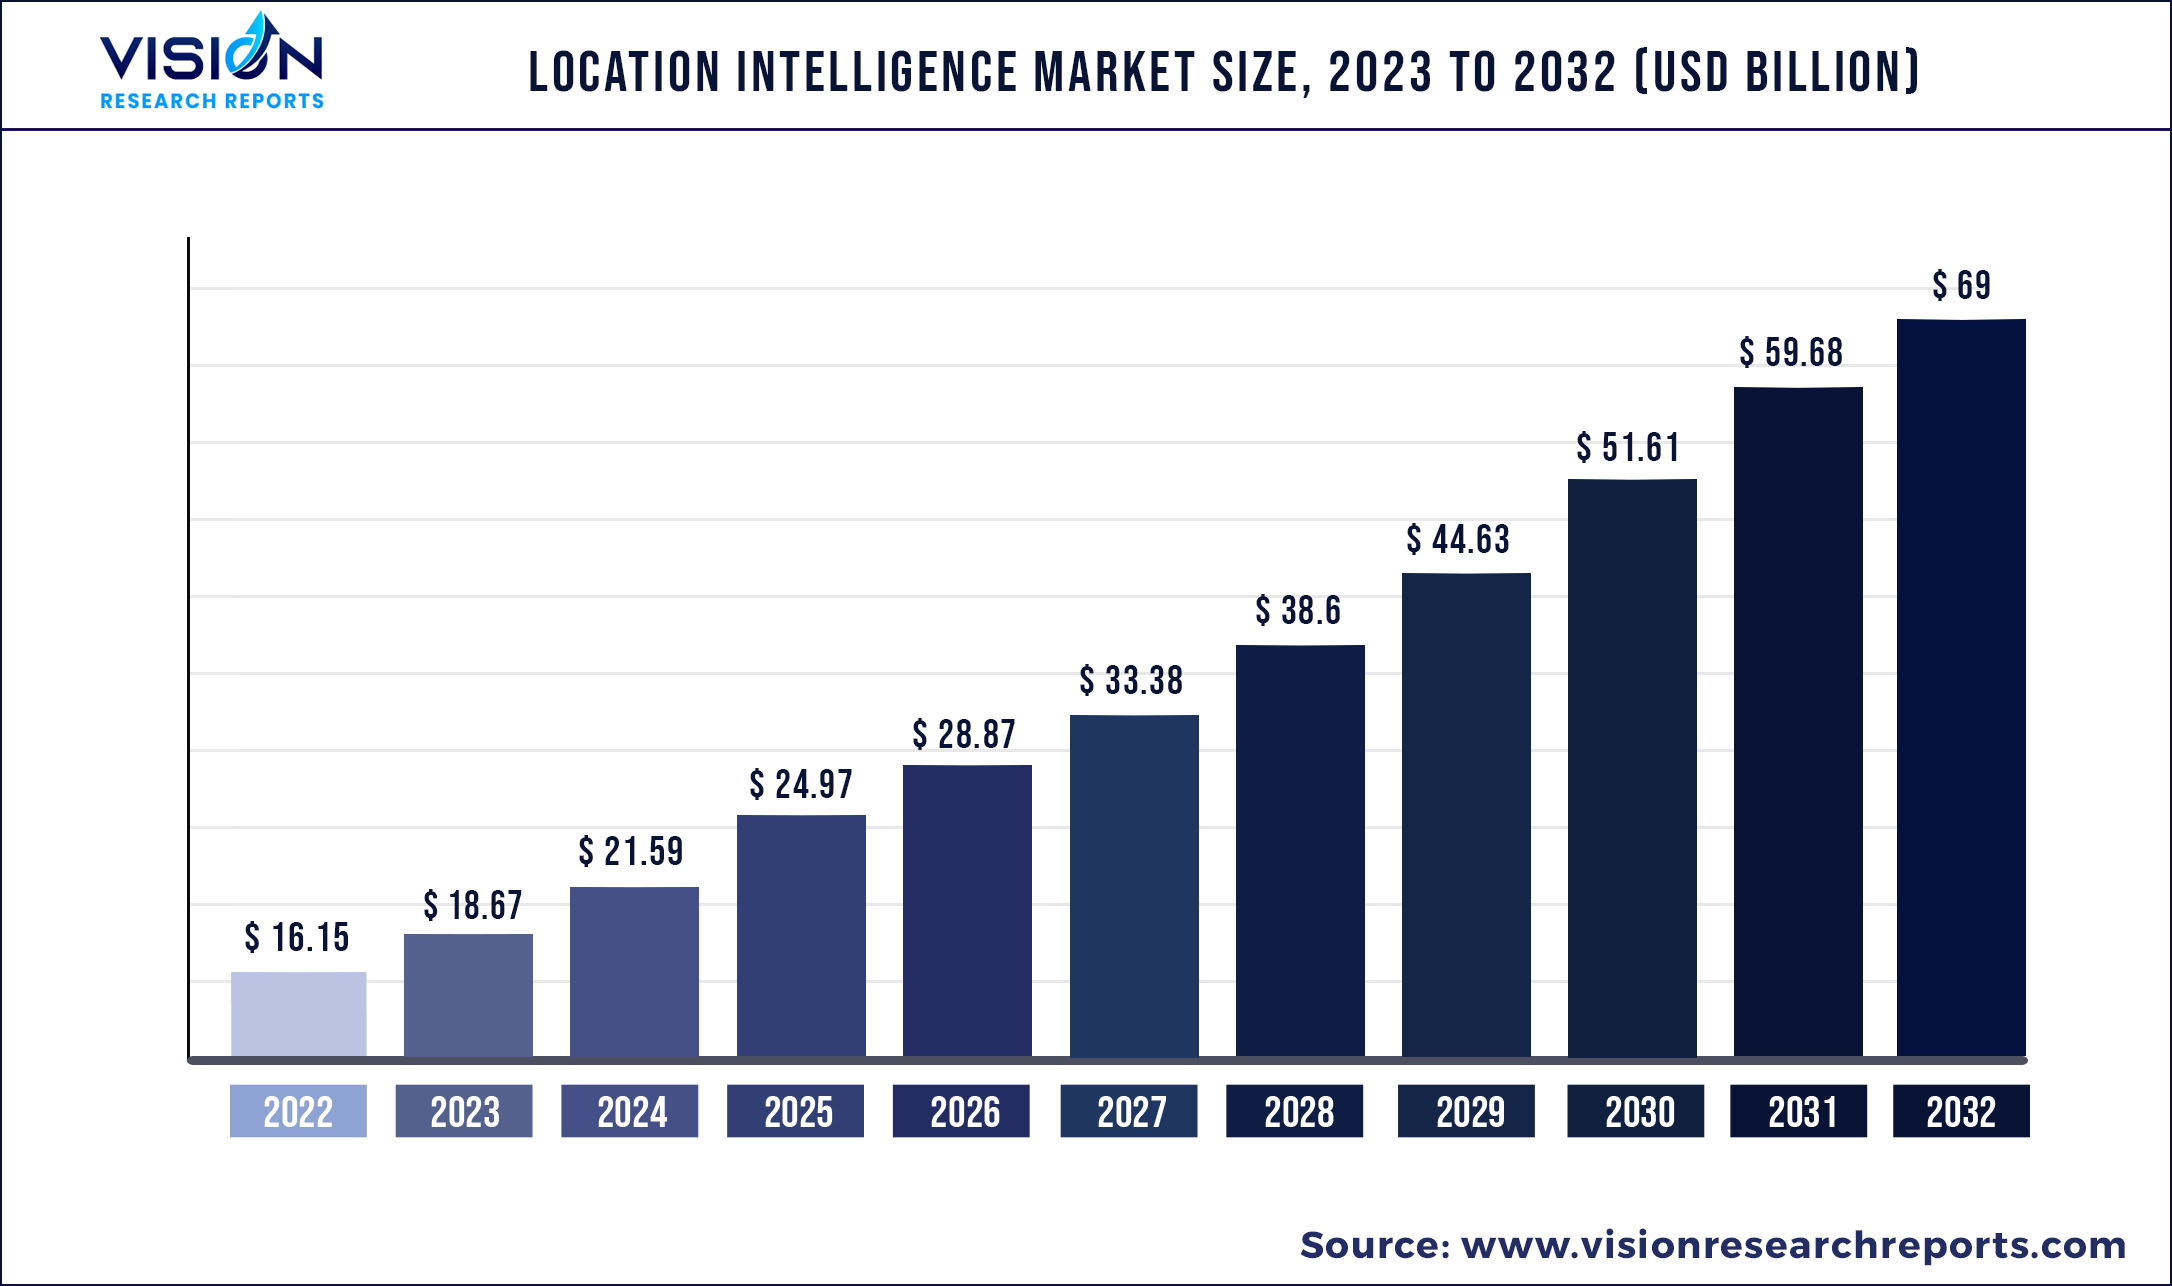 Location Intelligence Market Size 2023 to 2032